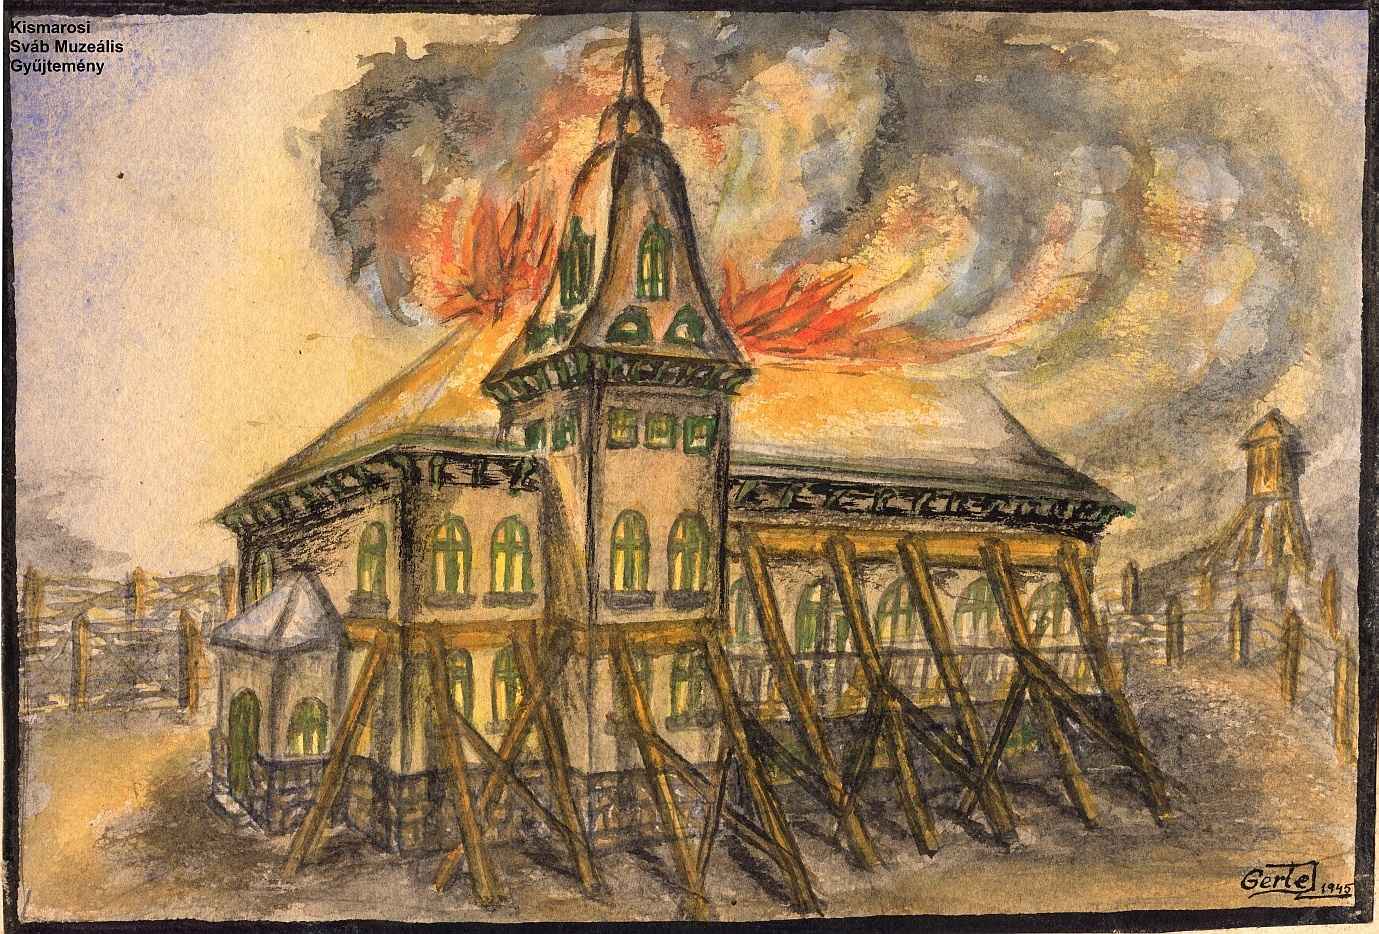 Az adjudi kastély lángokban (Kismarosi Sváb Muzeális Gyűjtemény RR-F)